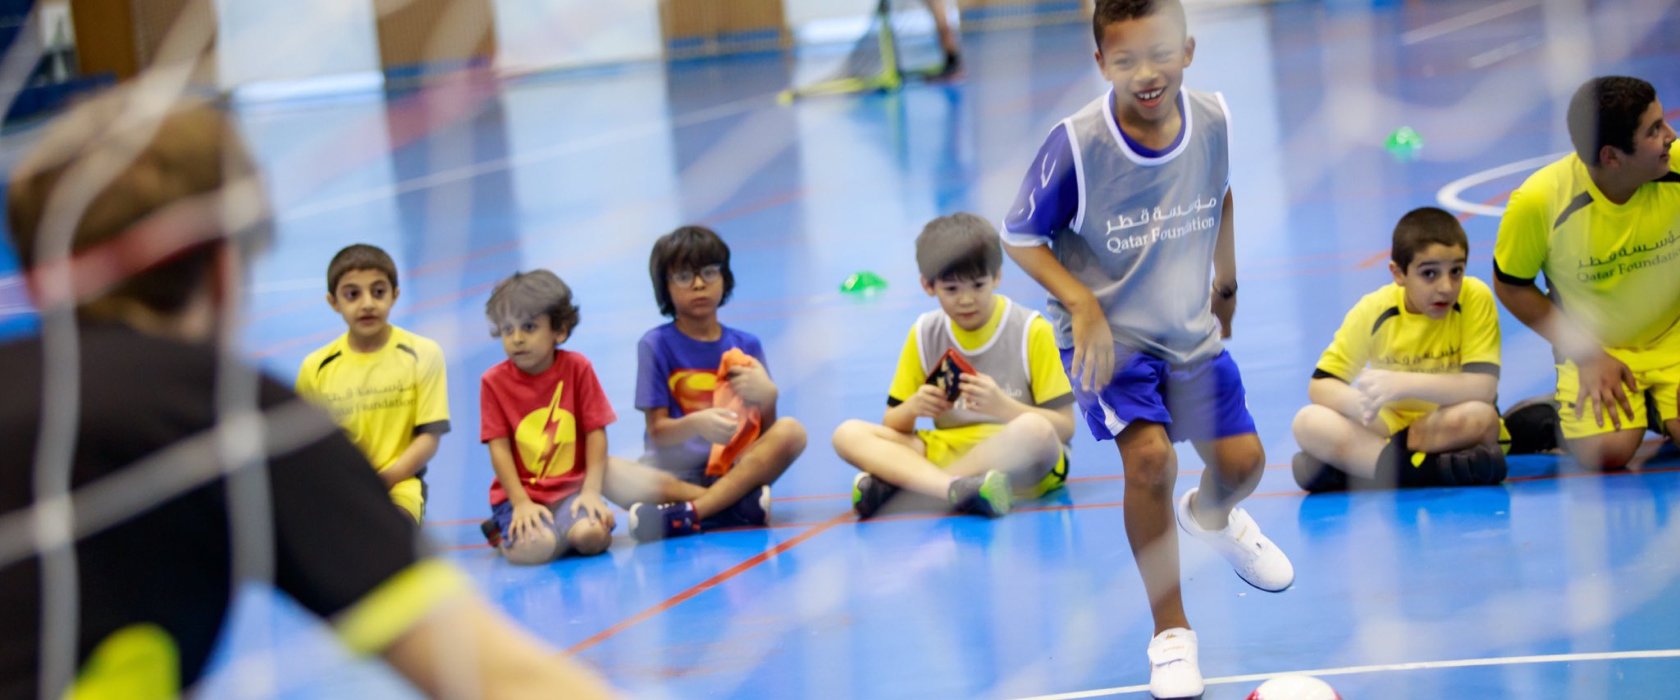 طلاب مؤسسة قطر يتطوعون لدعم أقرانهم من ذوي القدرات الخاصة في برنامج رياضي